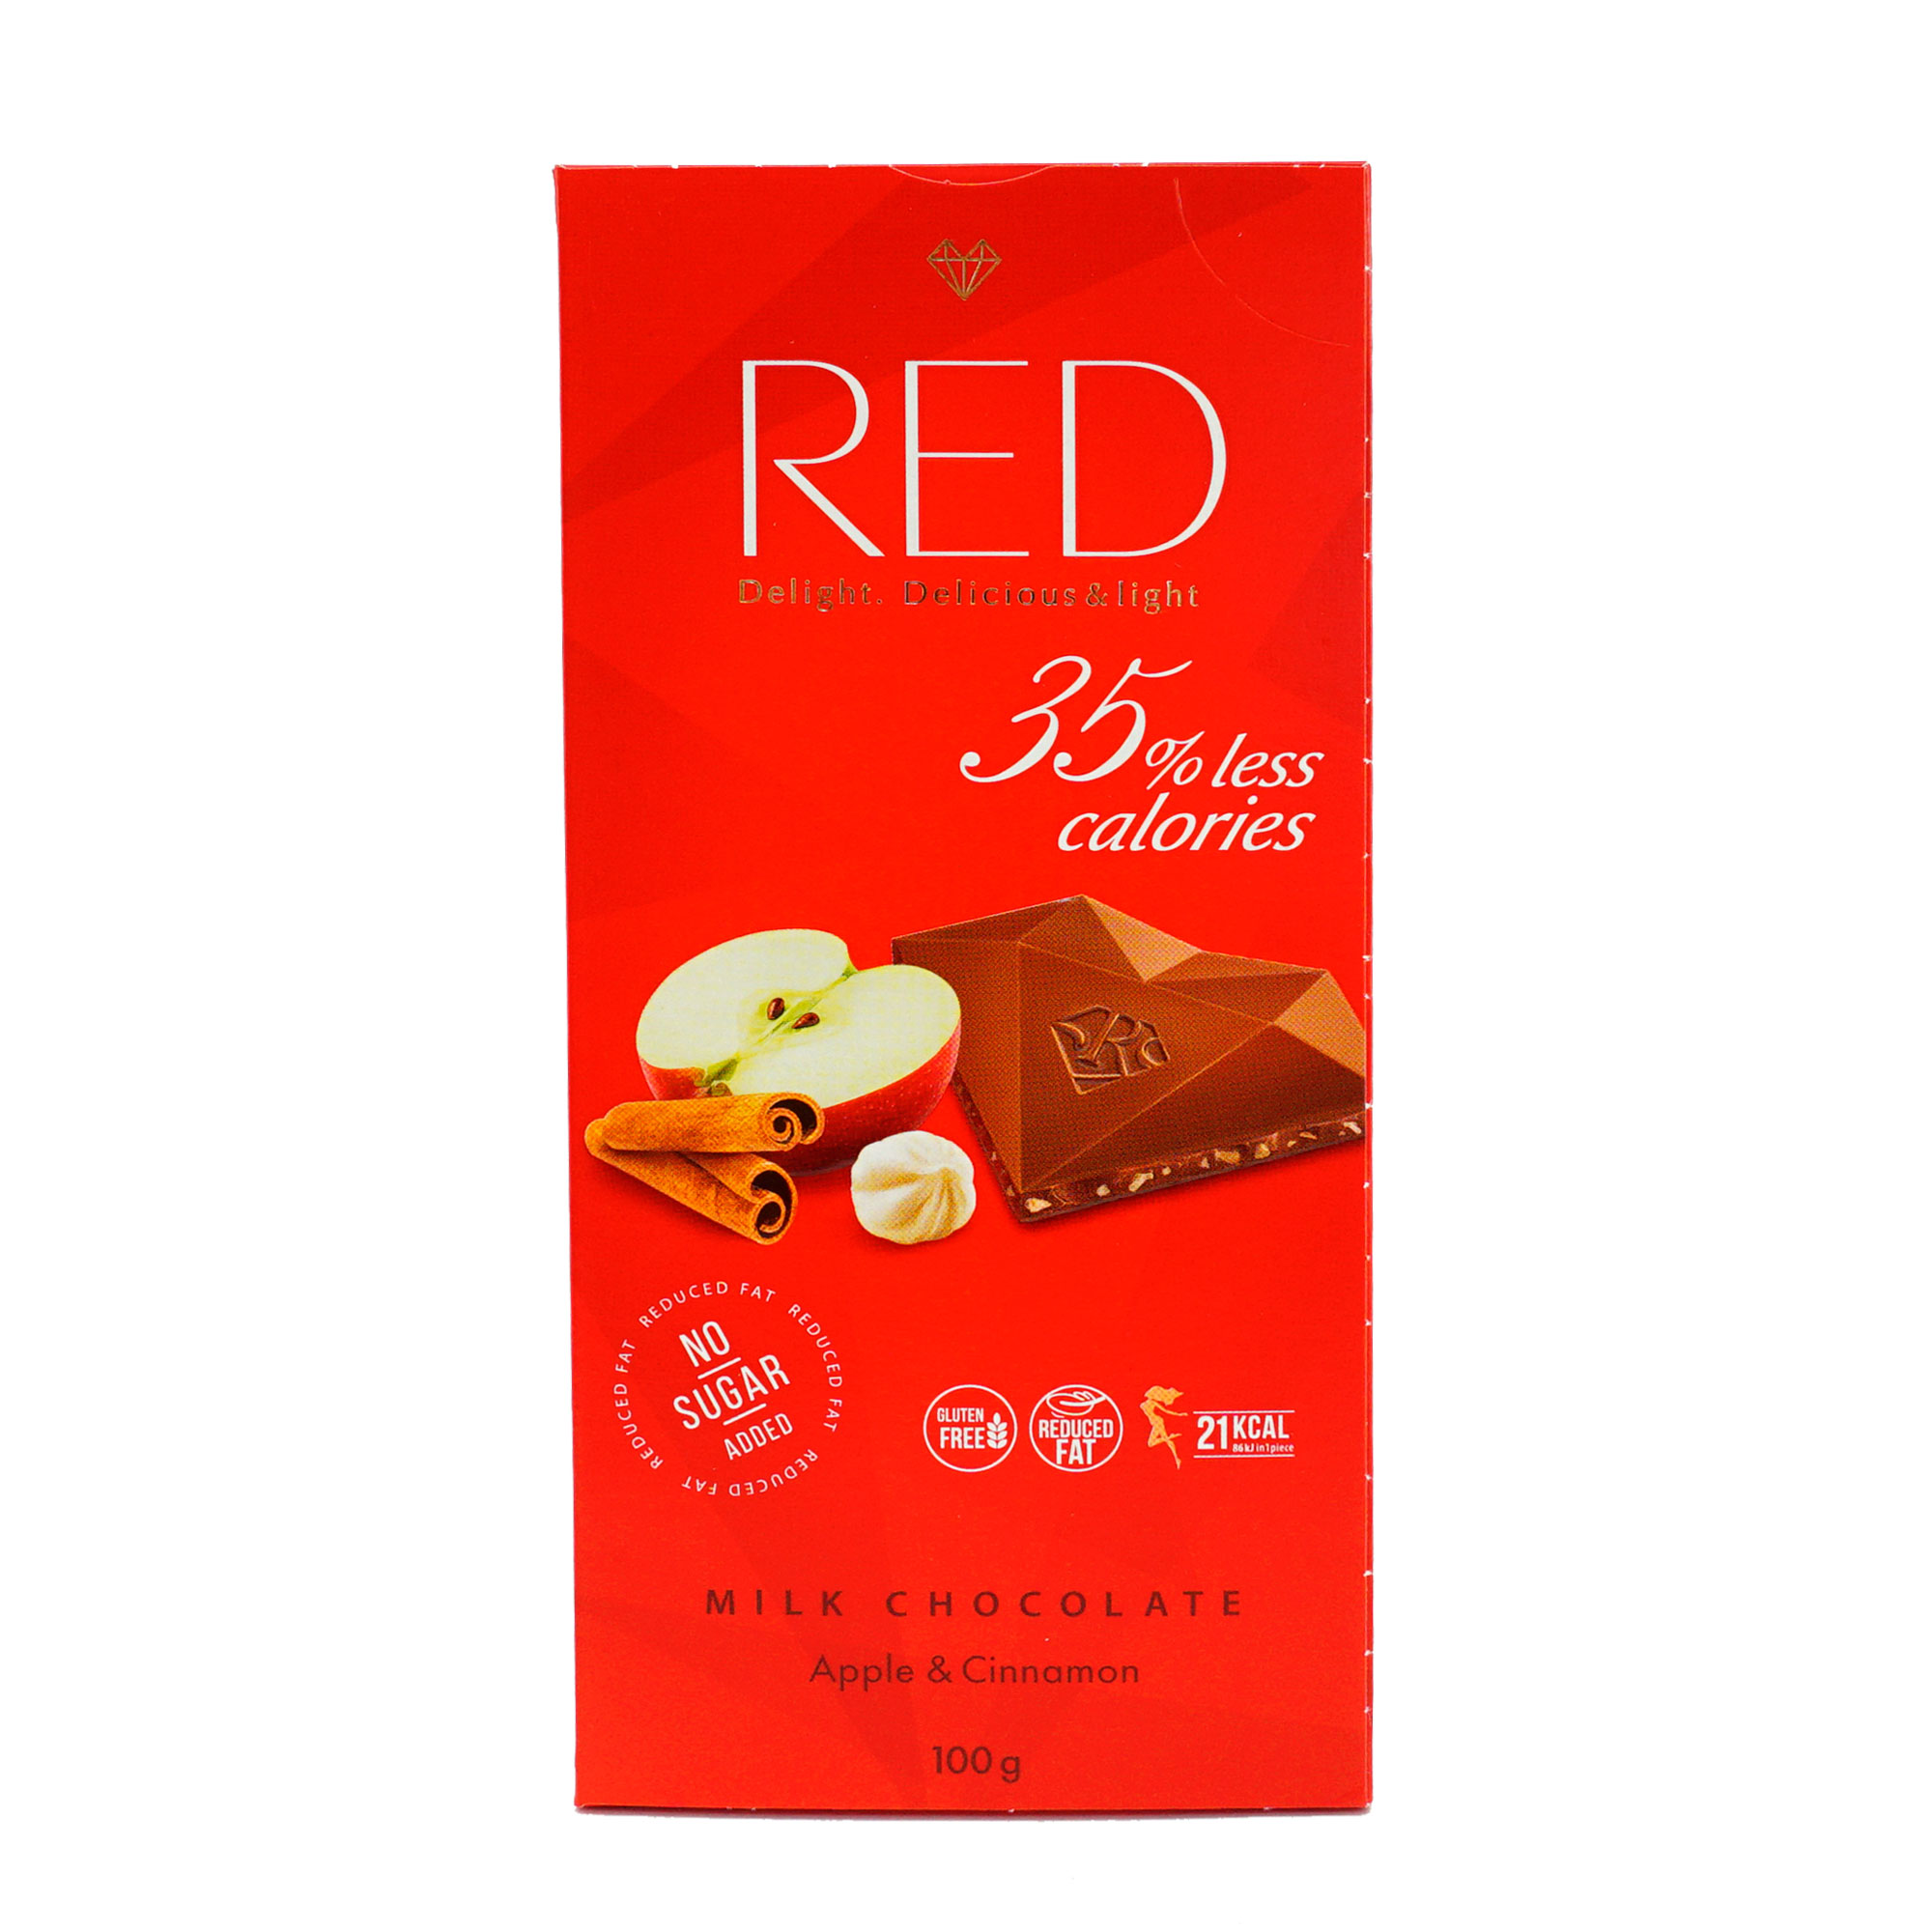 Шоколад Ред